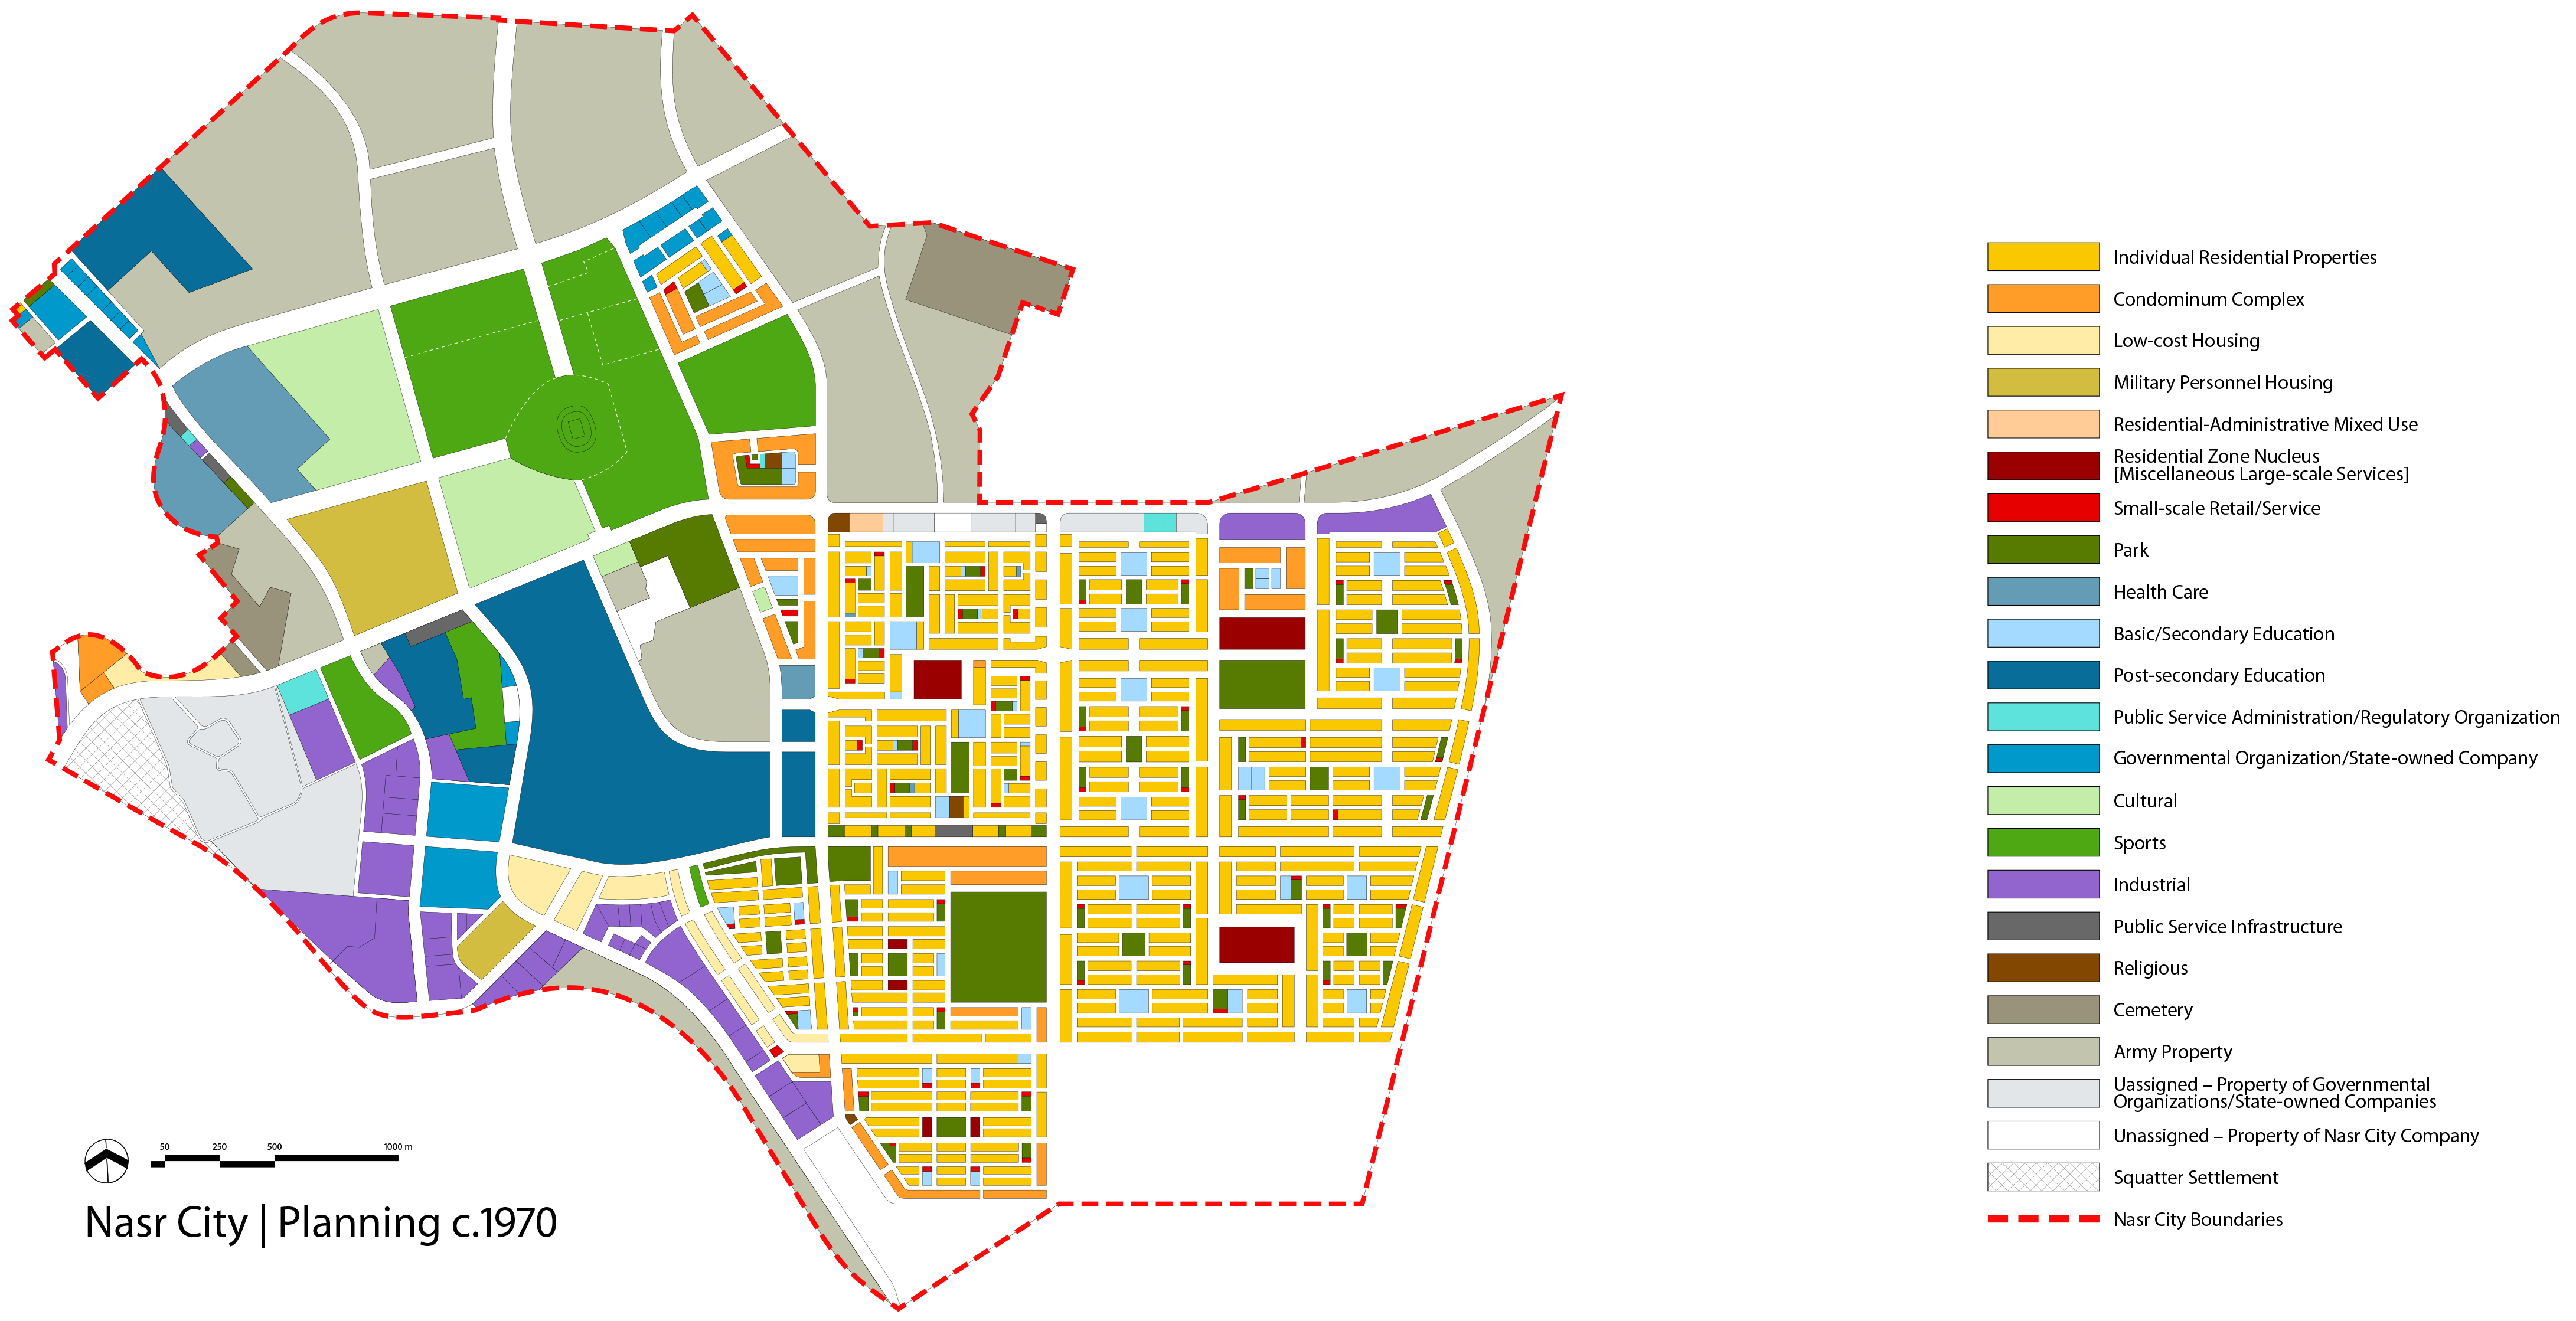 Nasr City land use 70s